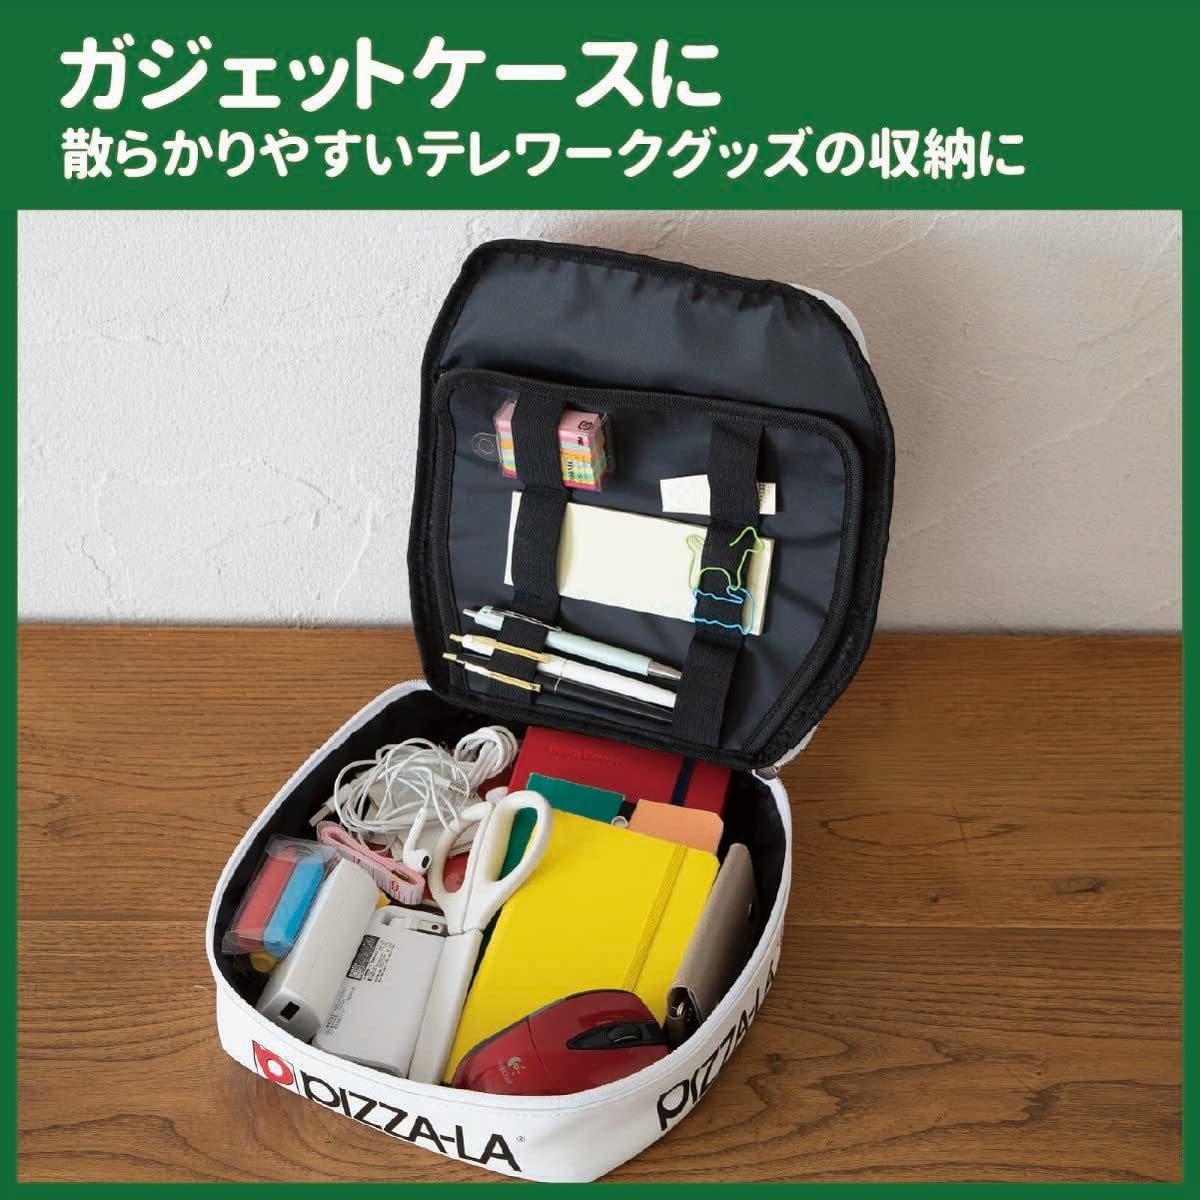 PIZZA-LA 35th ANNIVERSARY BOOKイタリアンバジルM sizeピザーラまるでピザ箱みたいな大容量ポーチ 上國料萌衣かまいたち鈴木愛理WANIMAの画像8